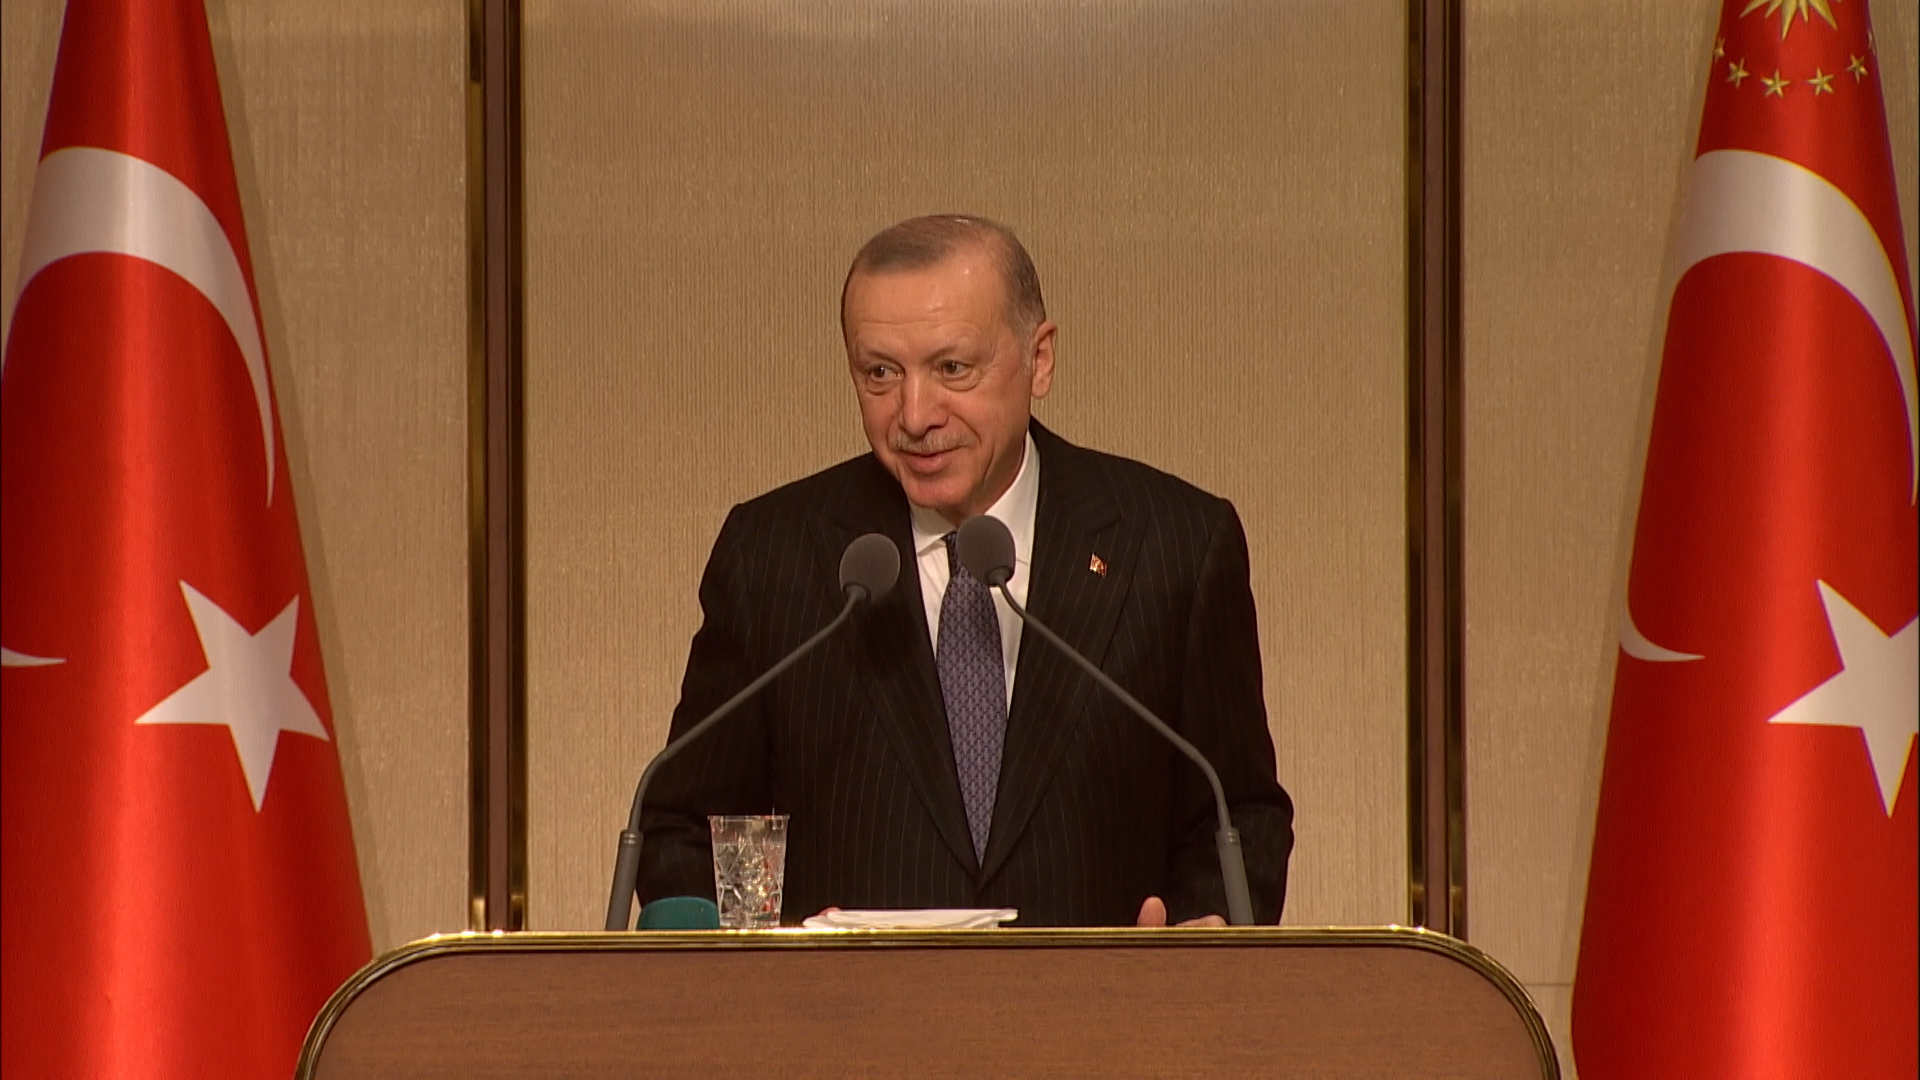 Cumhurbaşkanı Erdoğan ses kısıklığının sebebini açıkladı: Çanakkale Köprüsü'nün açılışında şifayı kaptık